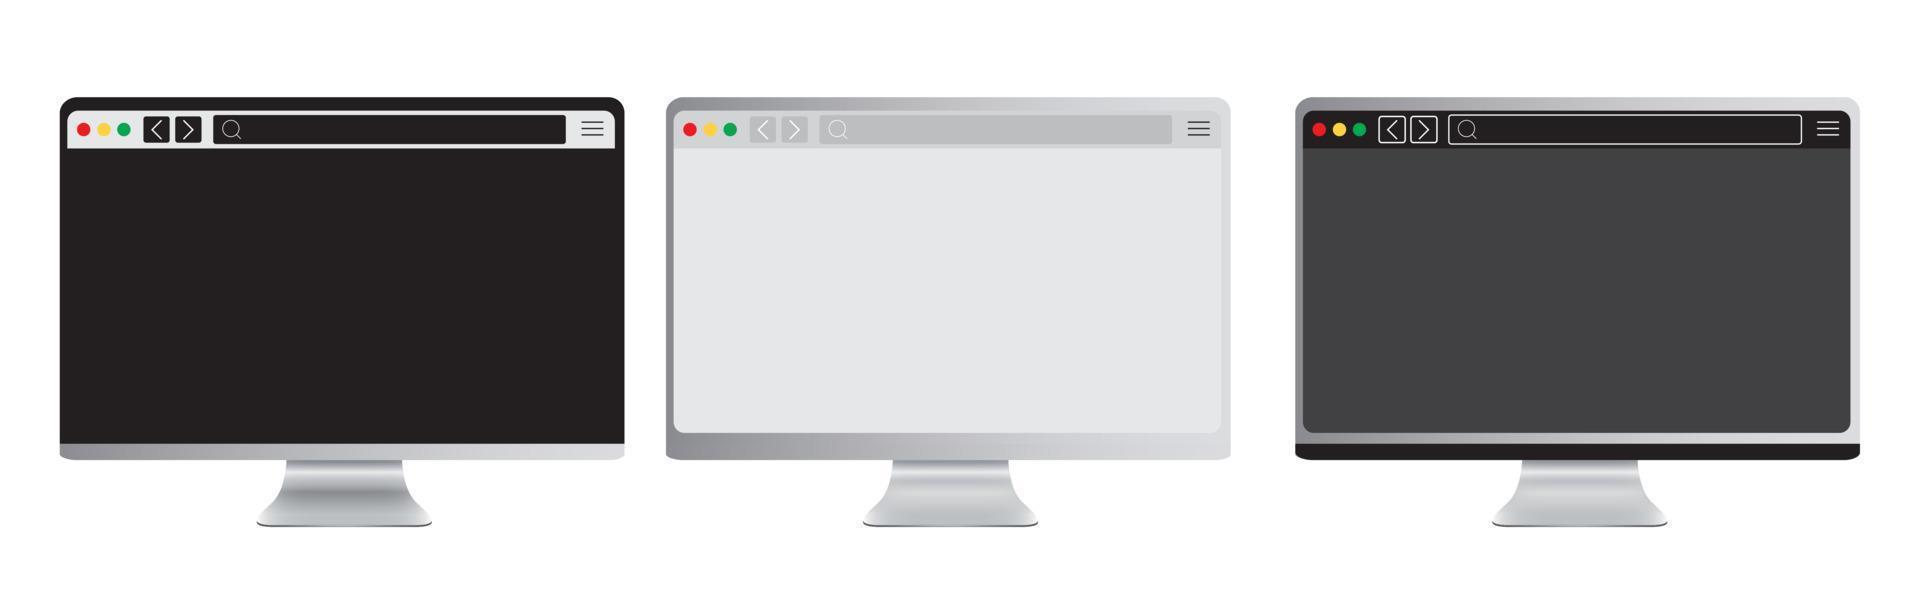 conjunto de tela de maquete do dispositivo portátil realista com a página do navegador. computador portátil editável com barra de pesquisa. pc isolado com display em branco do navegador em fundo branco. desenho vetorial vetor